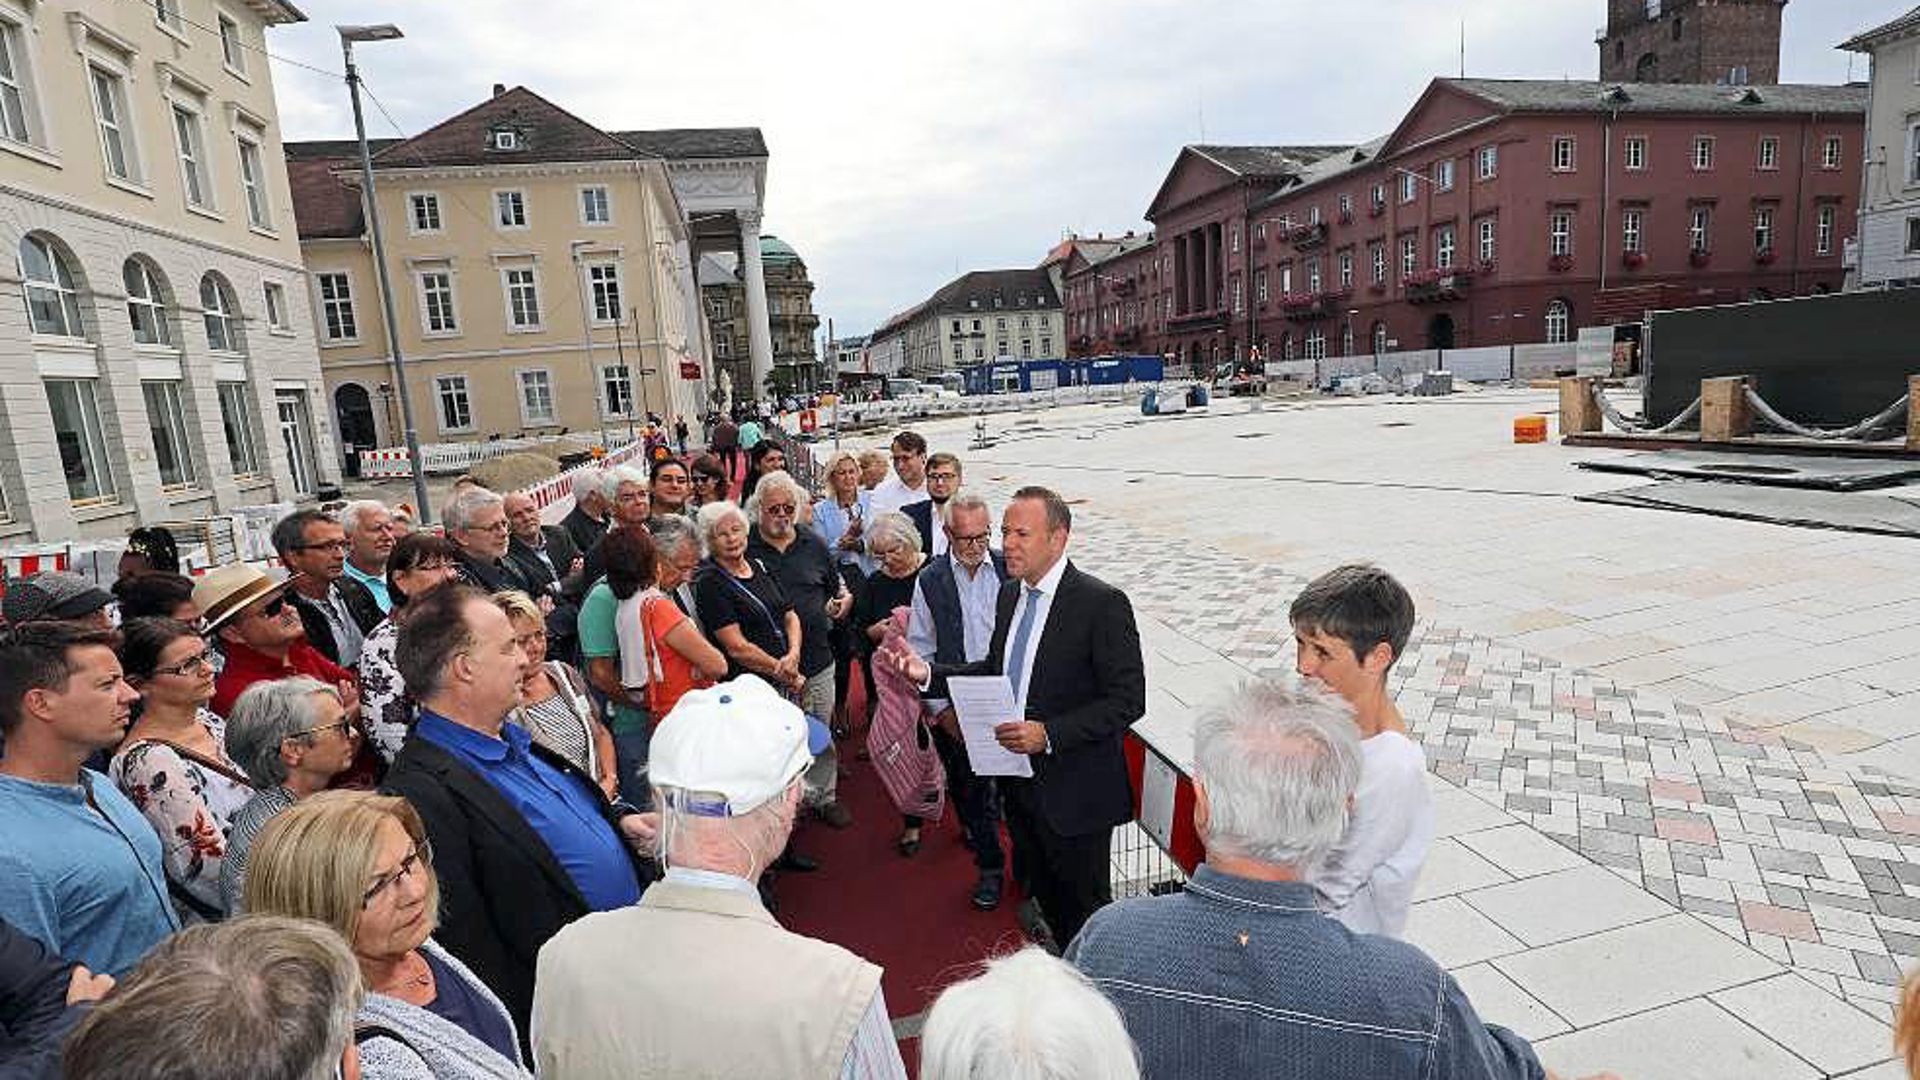 Die Gestaltung des Marktplatzes diskutiert Baubürgermeister Fluhrer (Mitte) mit zahlreich erschienenen Bürgern.